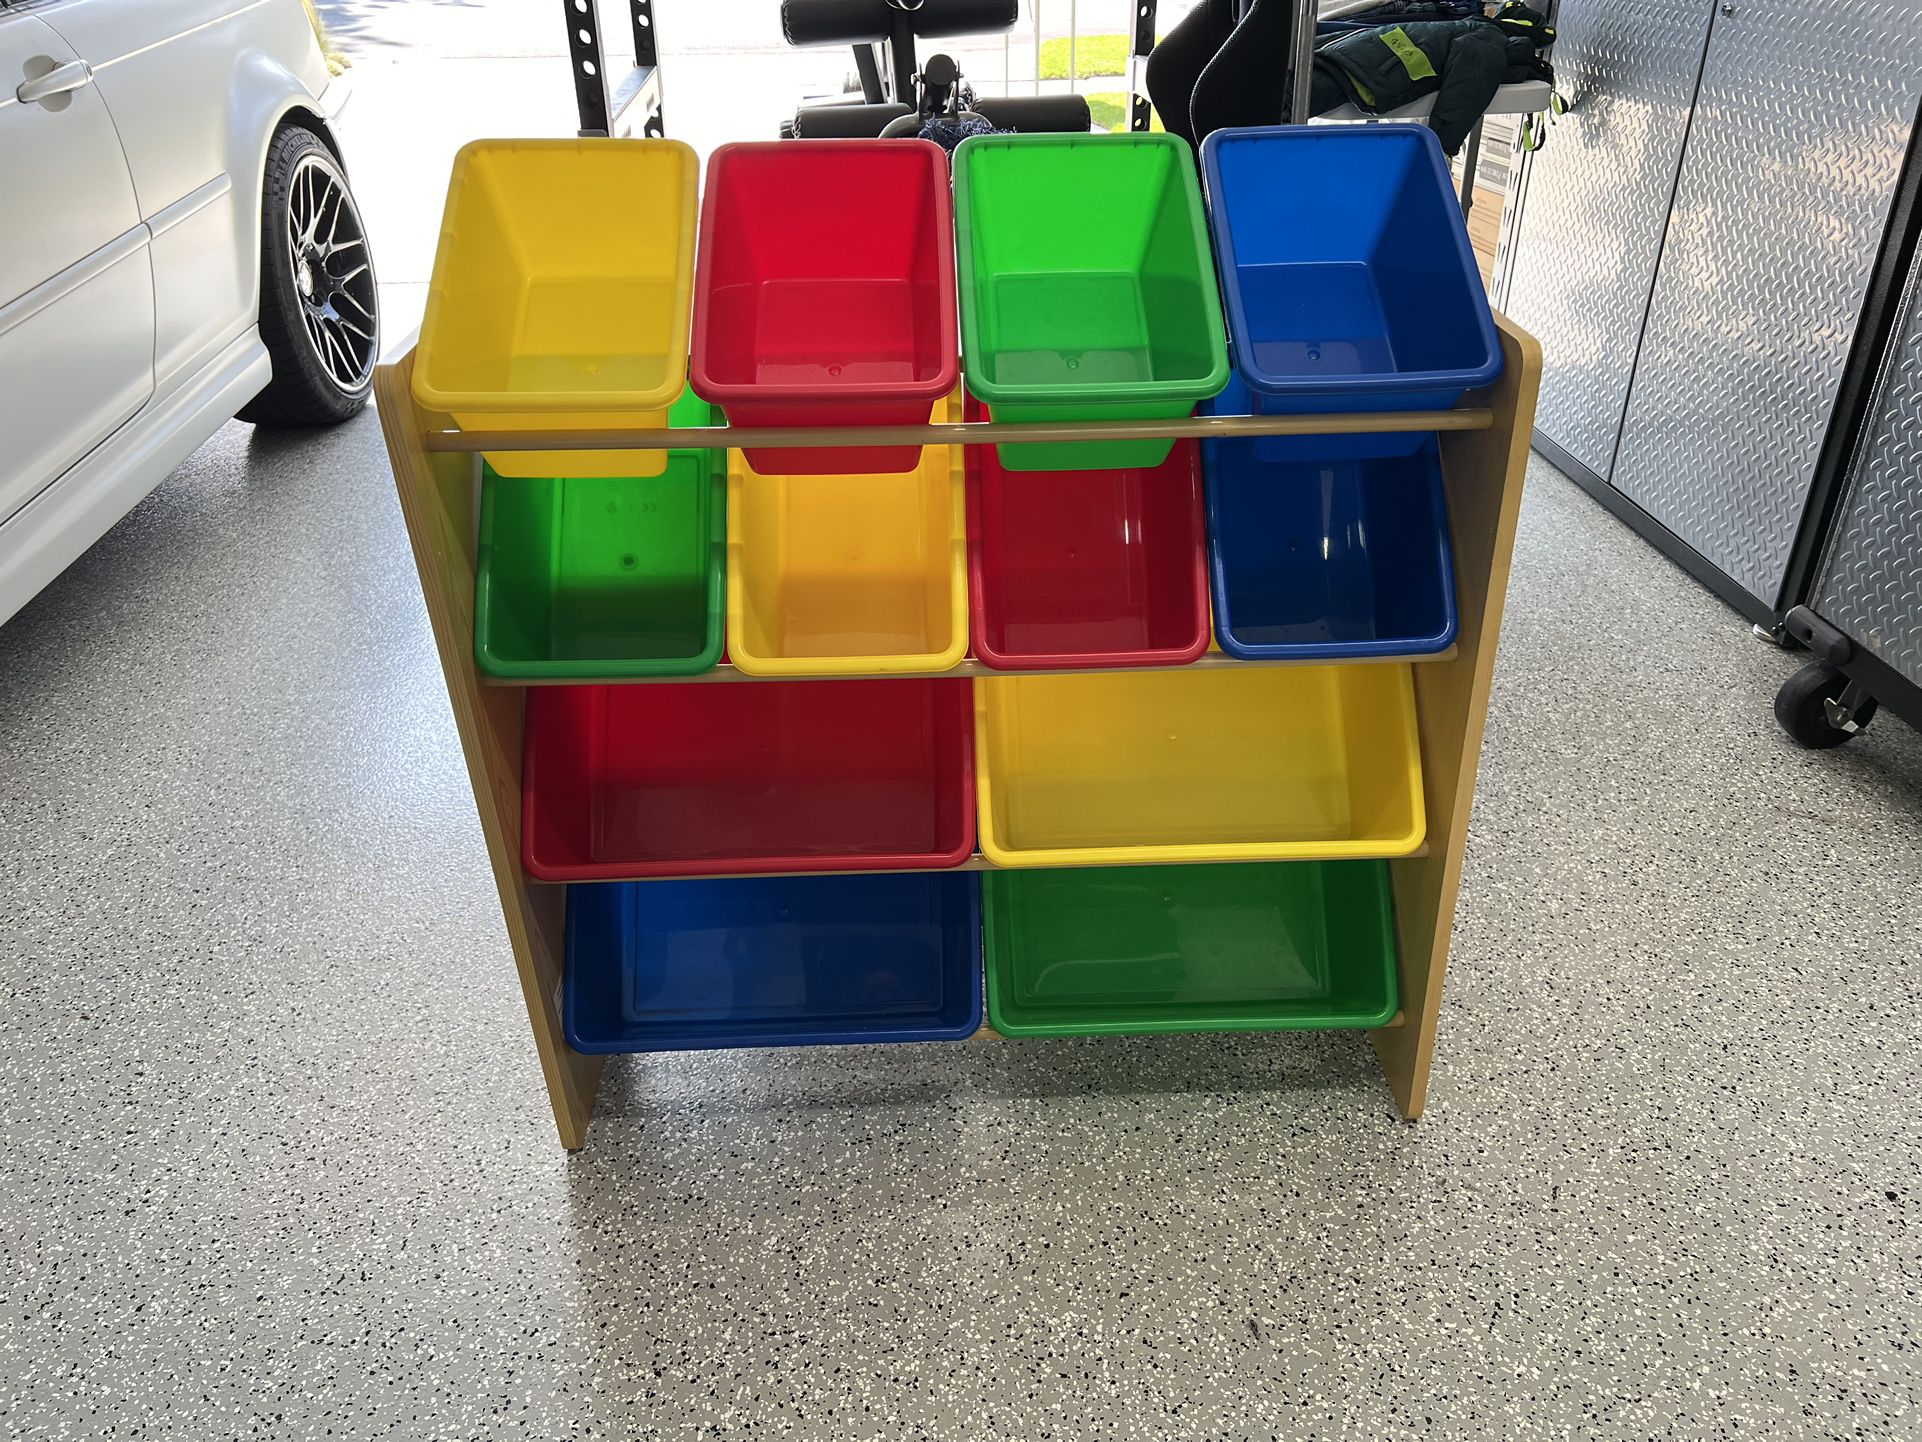 Children Kids Toy Storage Organizer with 12 Plastic Bins 